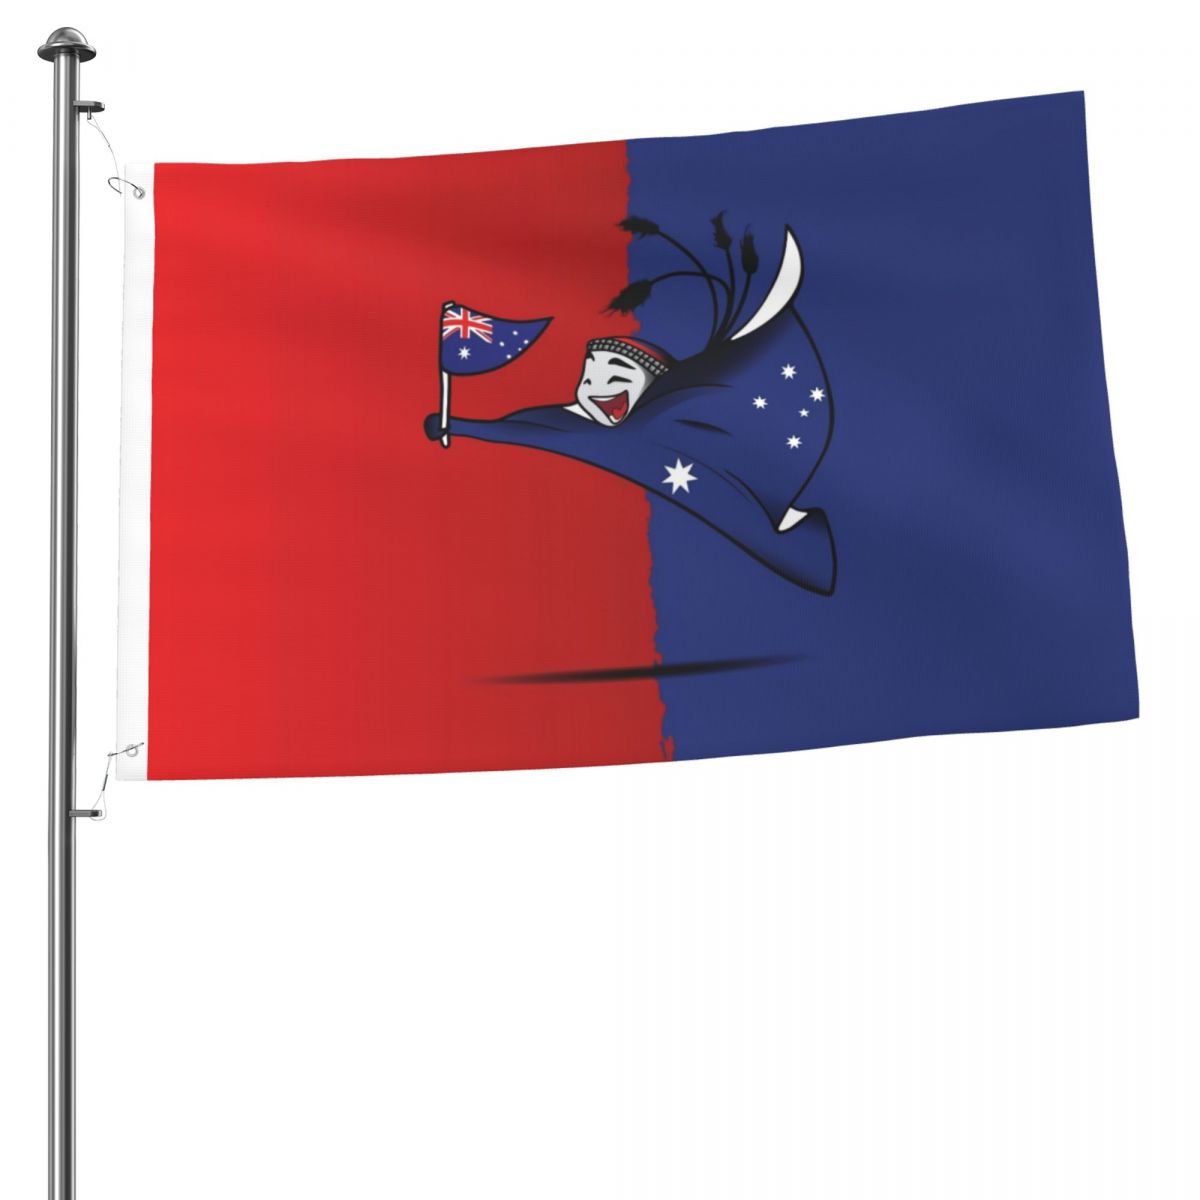 Australia World Cup 2022 Mascot 2x3FT Flag